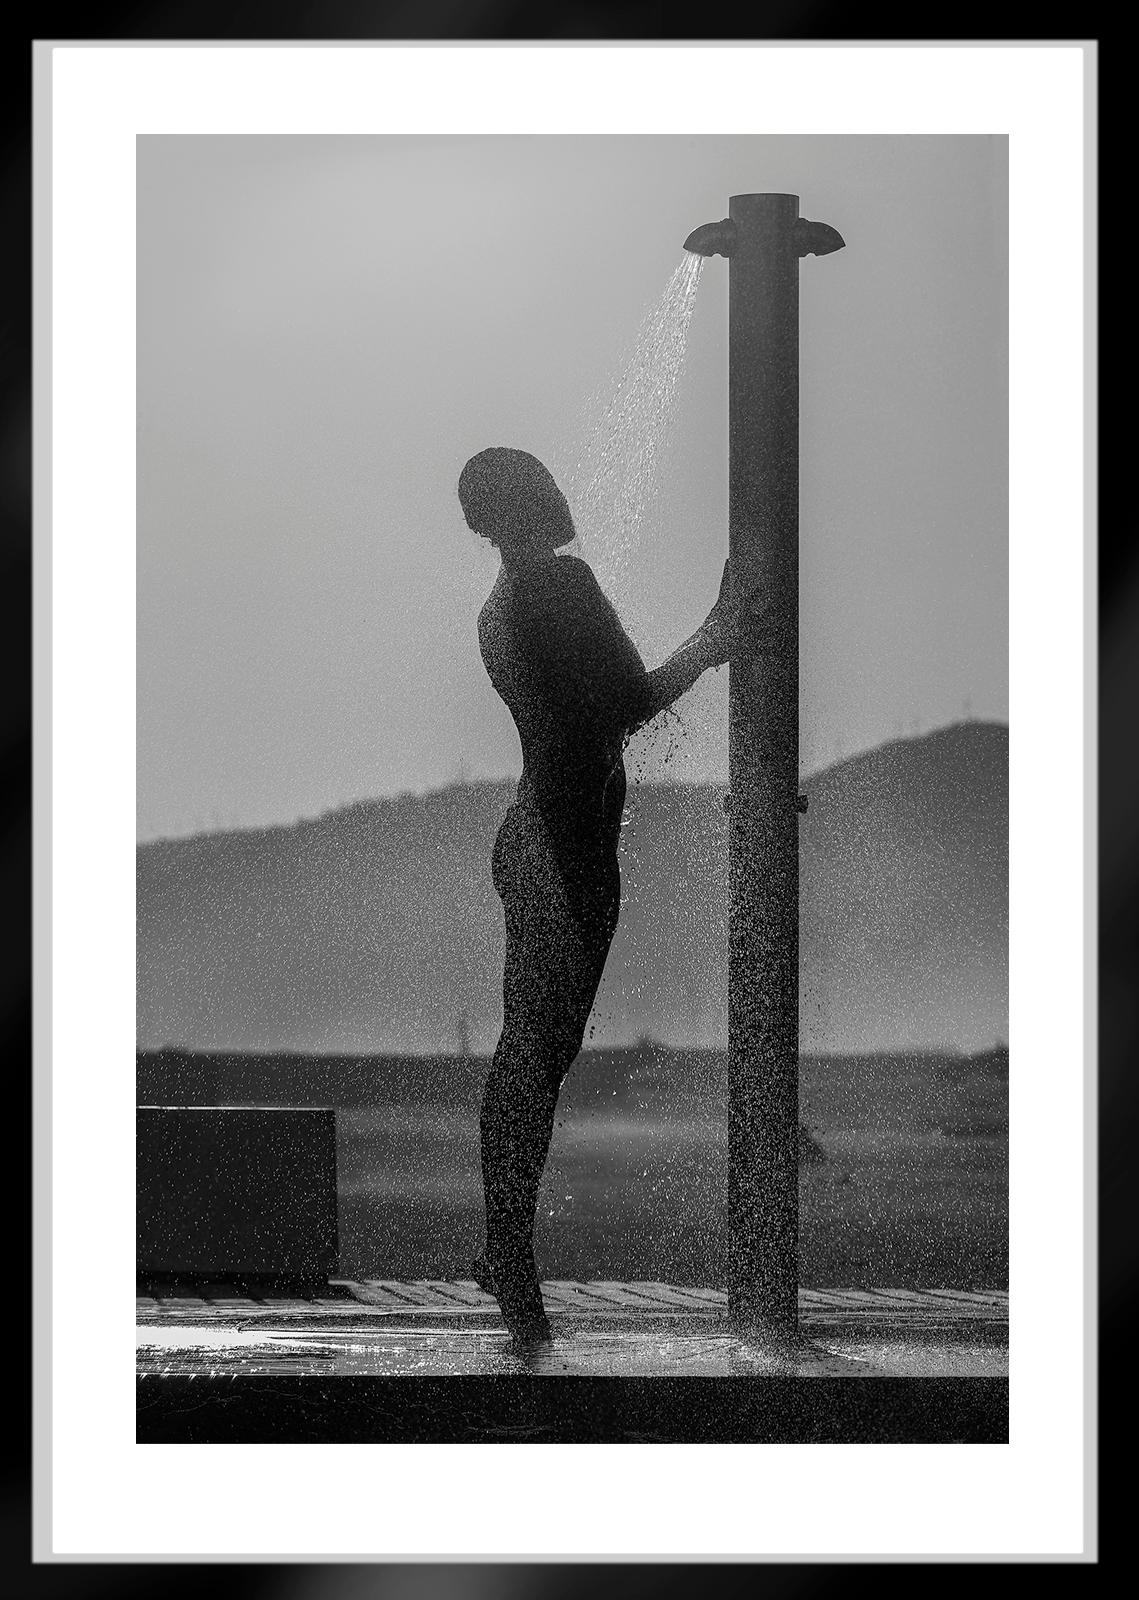 Stranddusche- Signierter Aktdruck in limitierter Auflage, Contemporary photo, Model (Grau), Figurative Photograph, von Ian Sanderson